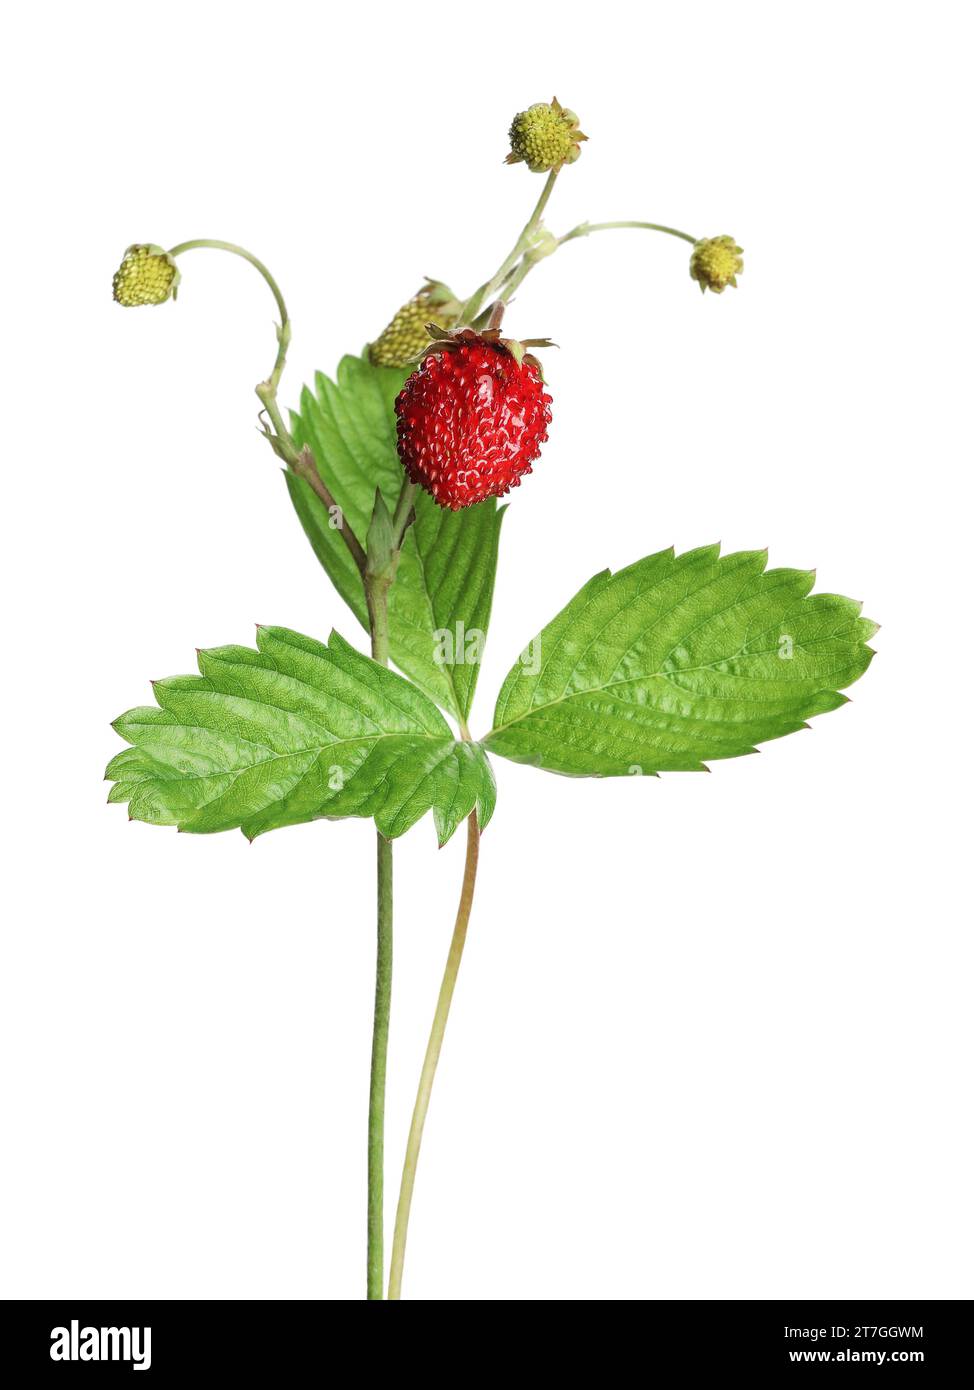 Stiele wilder Erdbeeren mit Beeren und grünen Blättern isoliert auf weiß Stockfoto